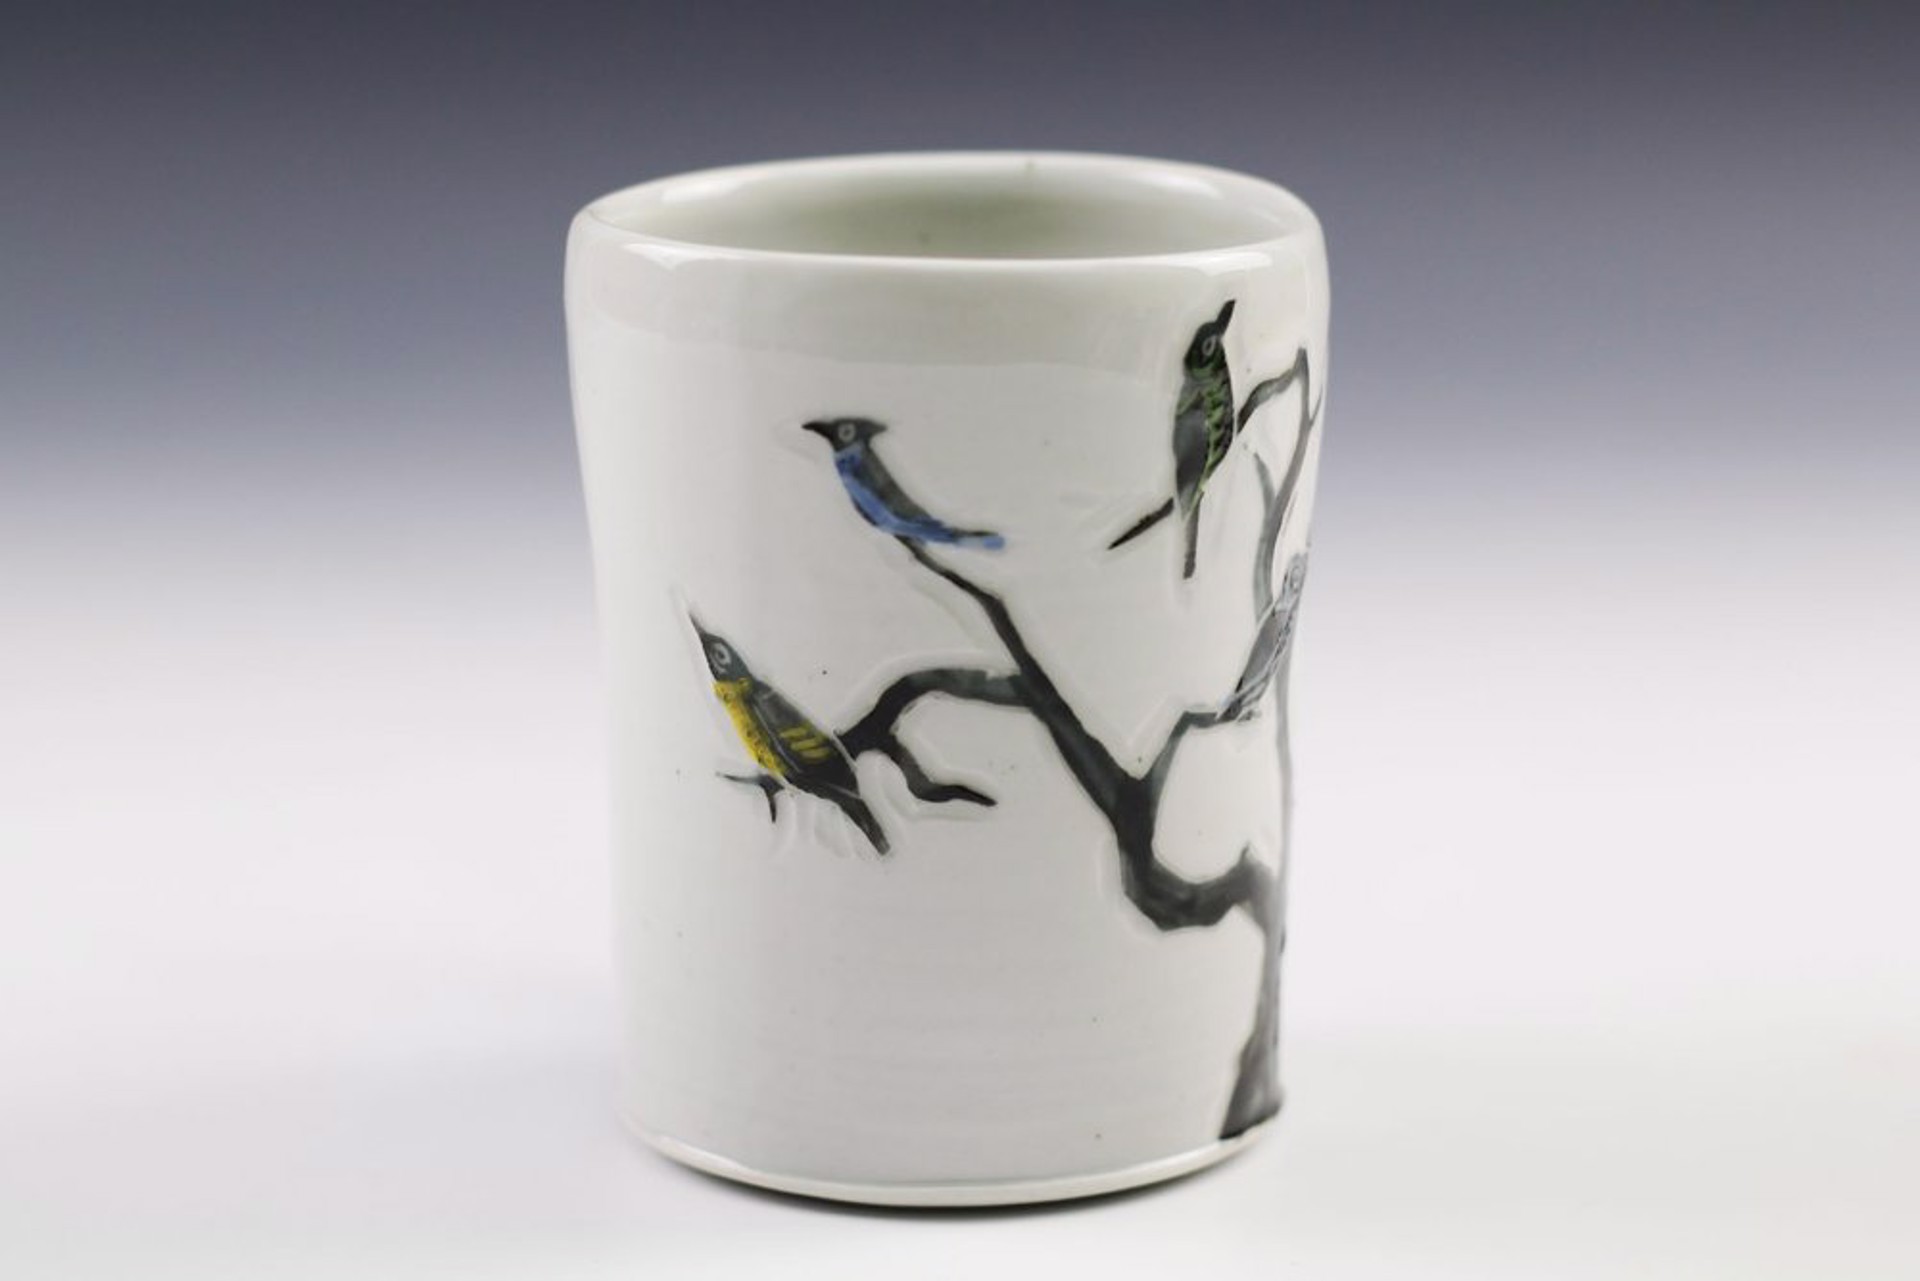 Birds on a Tree Mug by Glynnis Lessing